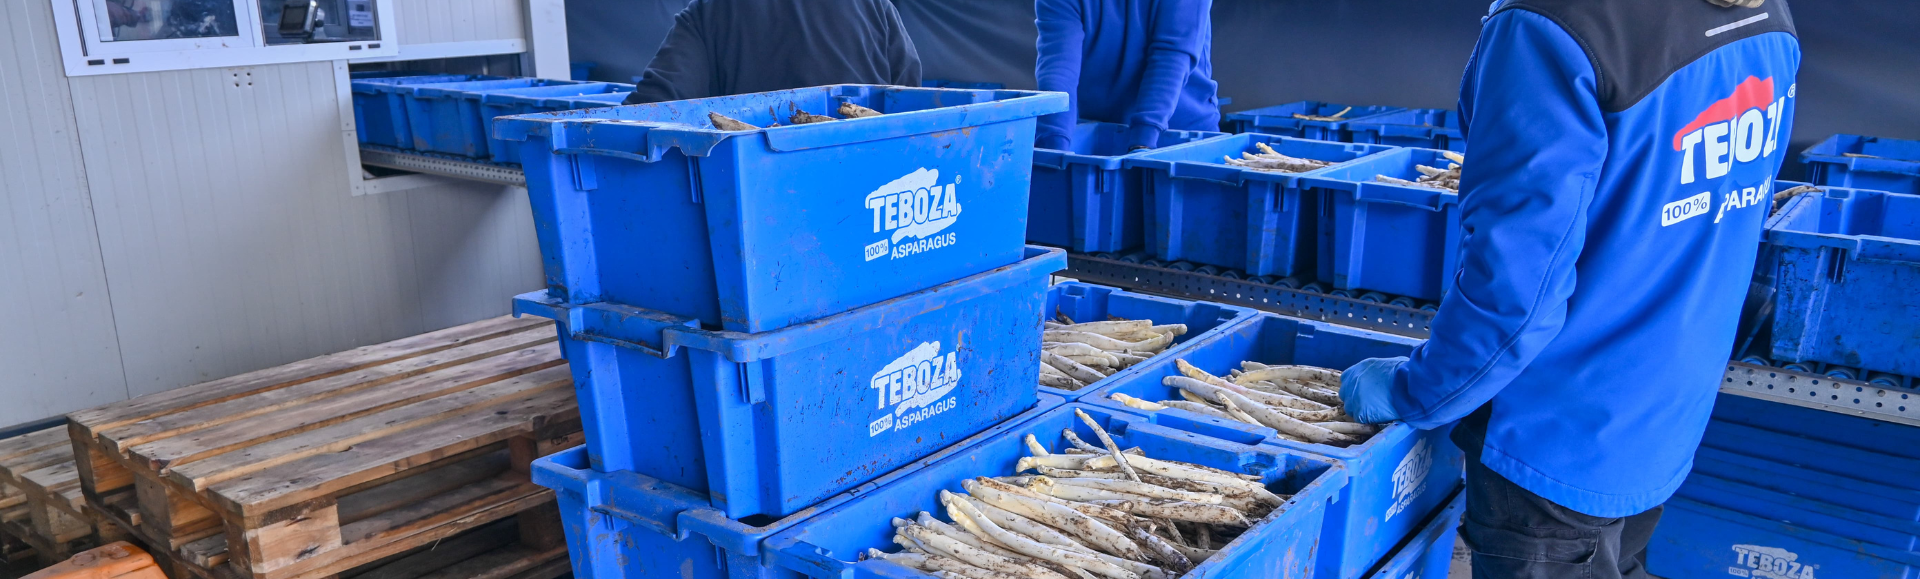 8.000 neue Drehstapelbehälter für Teboza